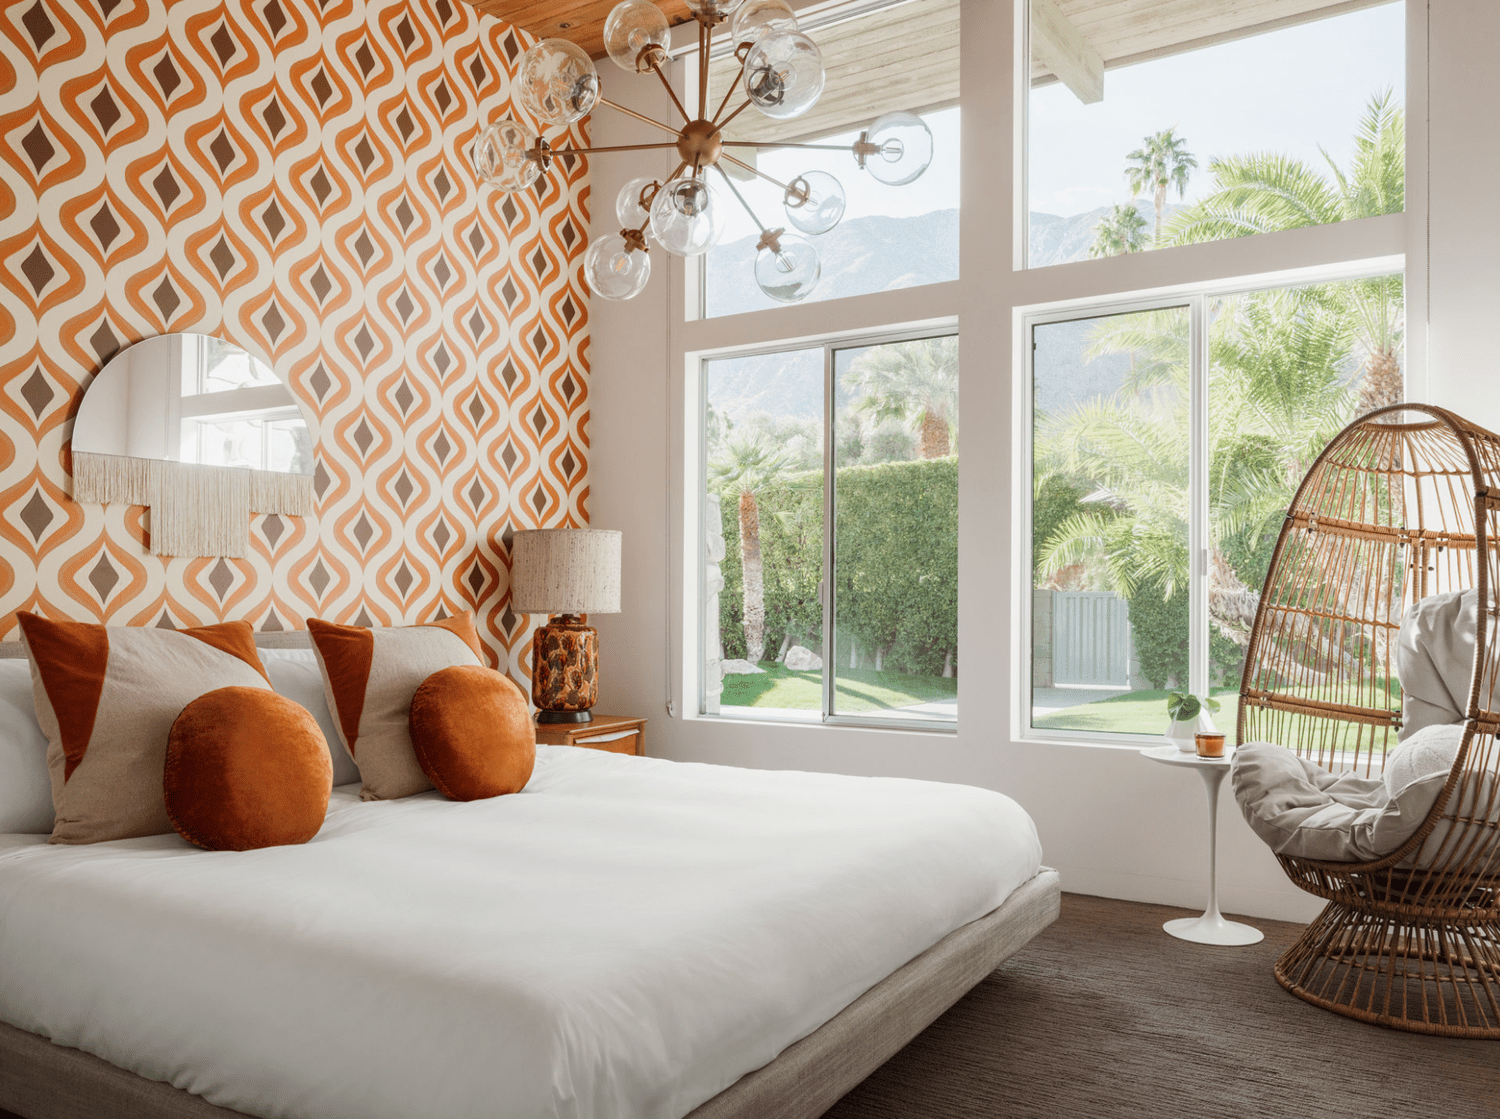 Ein modernes Art-Deco-Schlafzimmer mit orangefarbener Tapete, orangefarbenen Kissen und einem Starburst-Kronleuchter